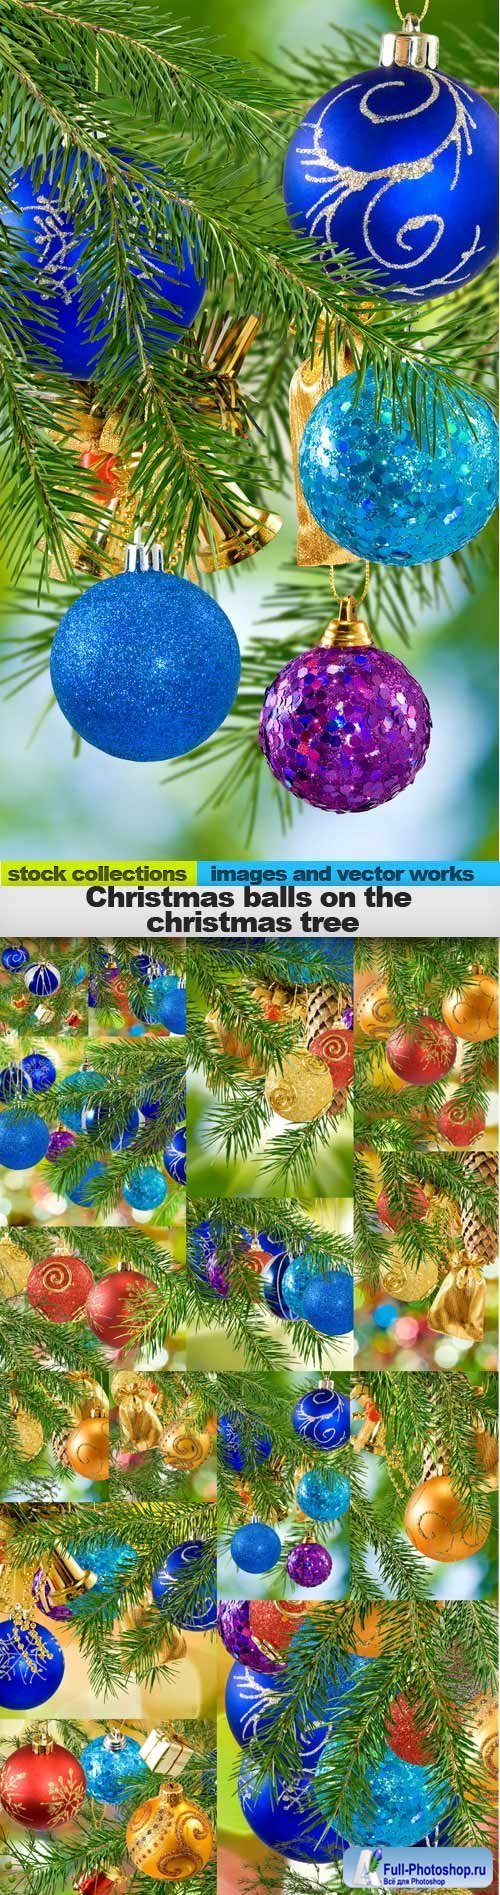 Christmas Balls on the Christmas Tree 15xJPG